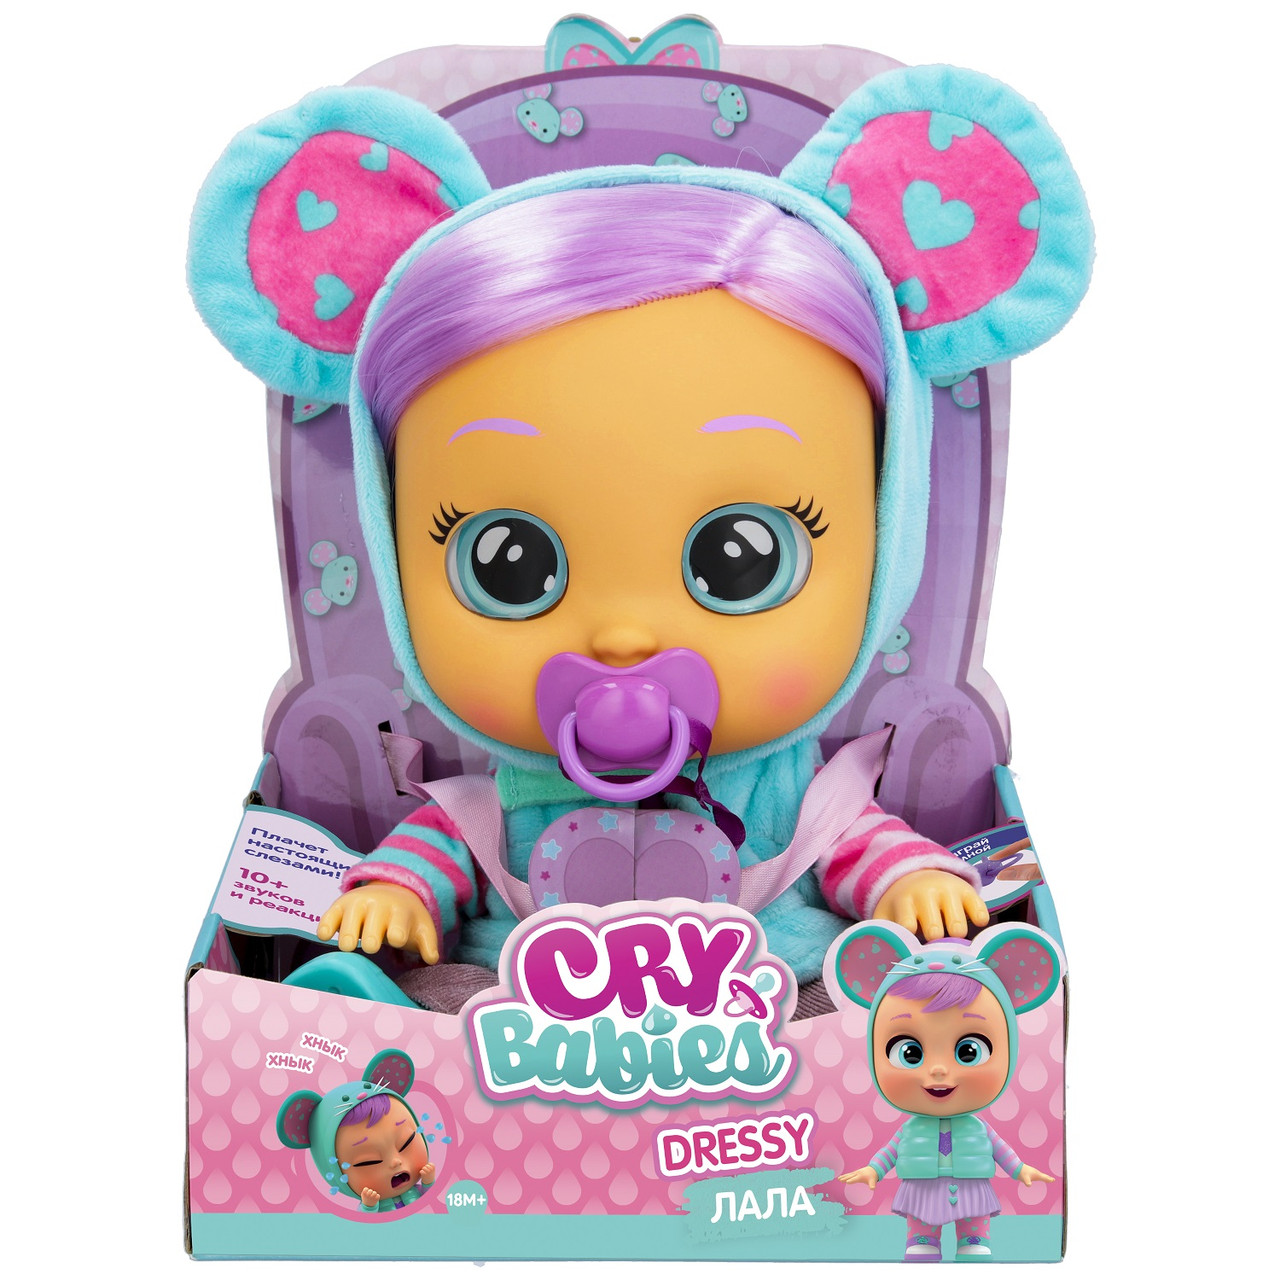 Планета Игрушек Кукла пупс Cry Babies Dressy Лала 40888